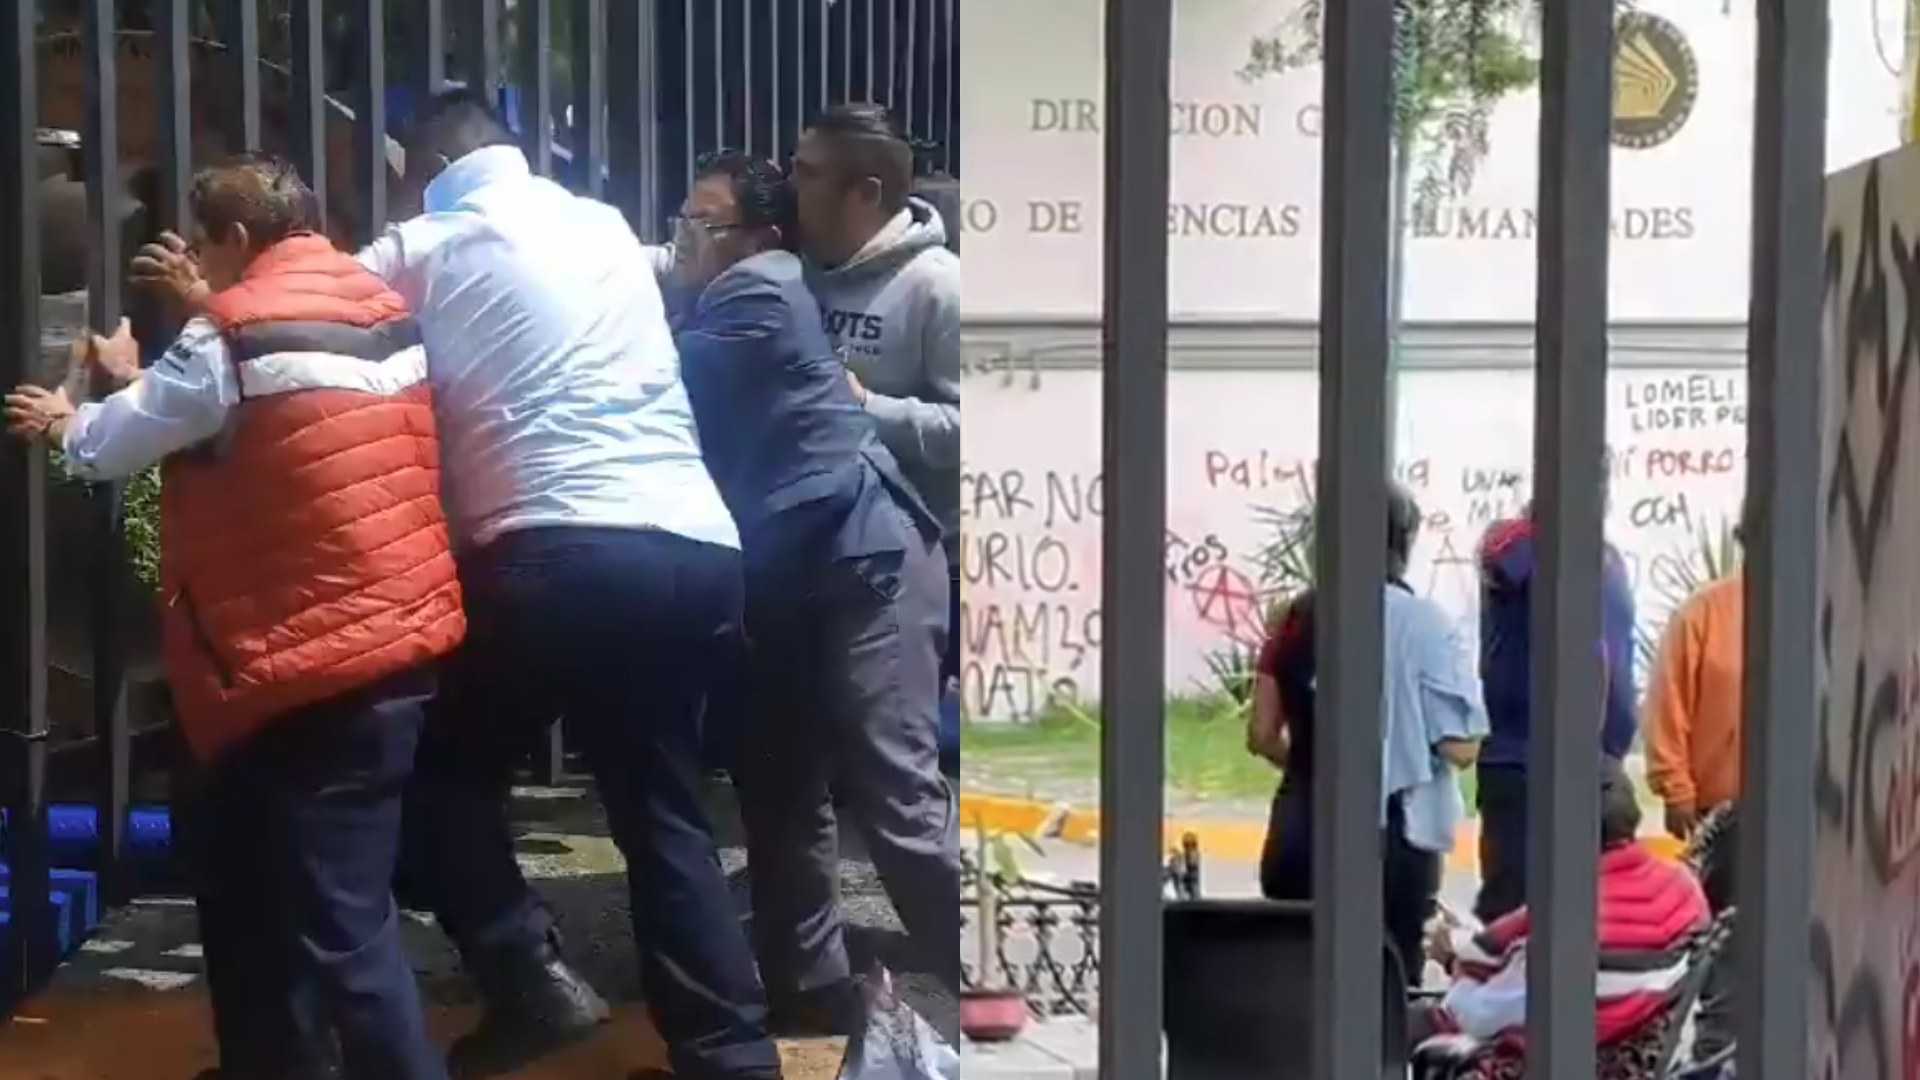 UNAM recupera instalaciones de la Dirección General de CCH tras ser vandalizadas